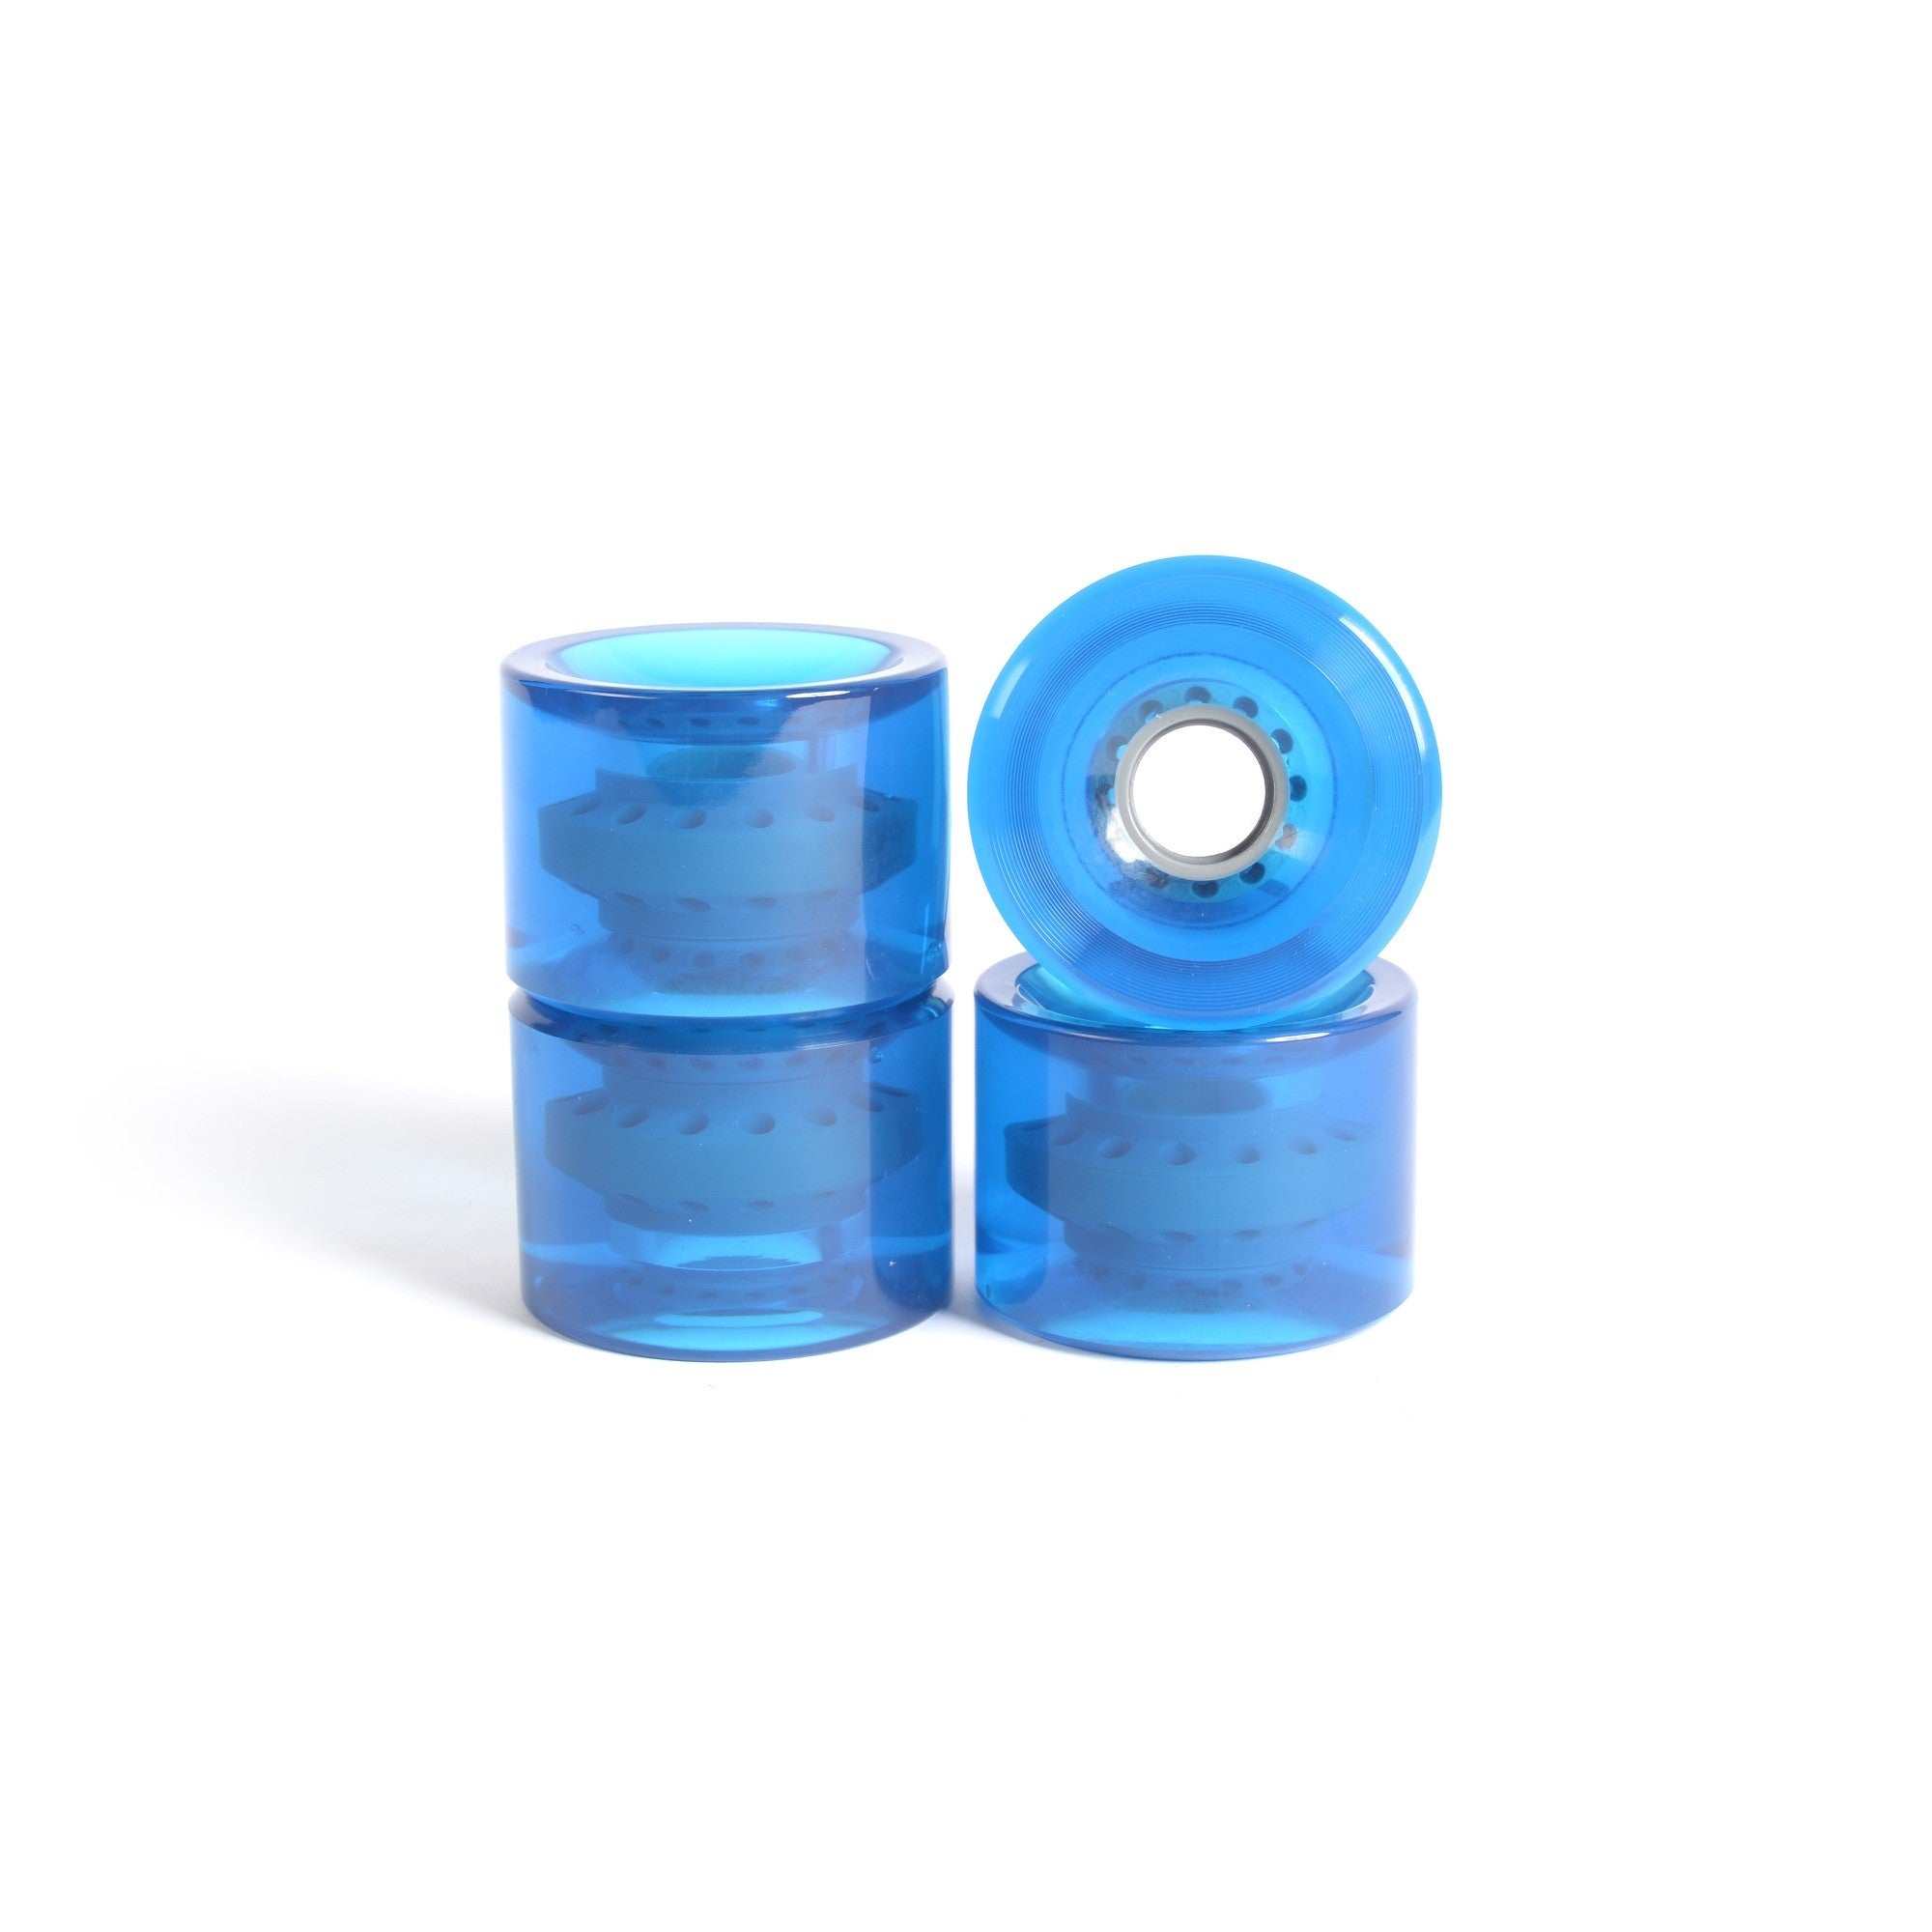 Skateboard wheels - YOCAHER 71x51mm 78a - Translucid Blue